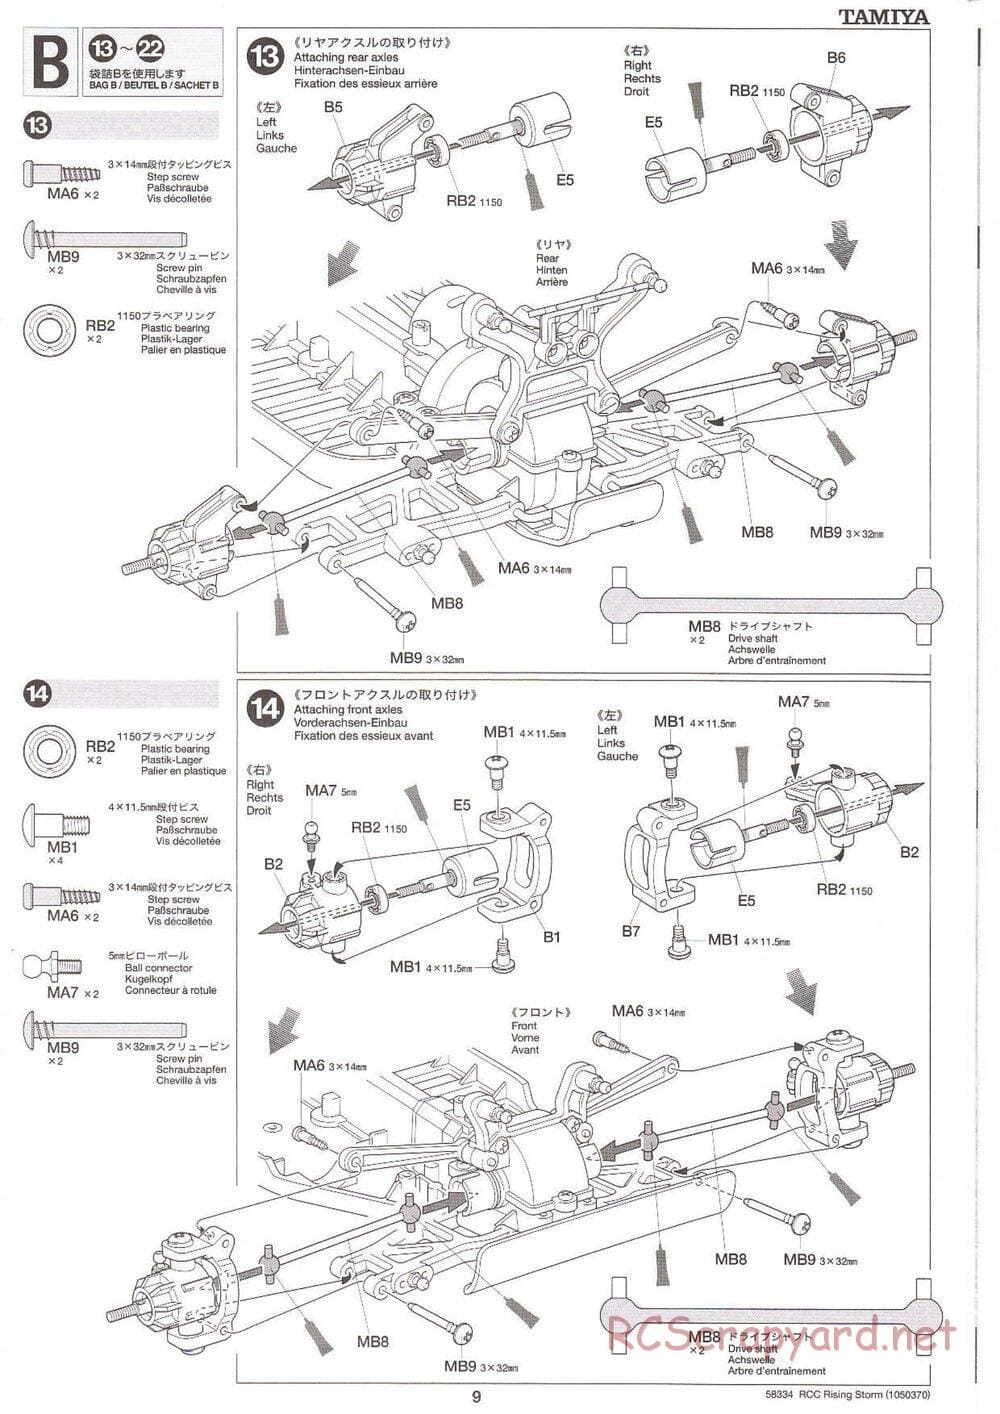 Tamiya - Rising Storm Chassis - Manual - Page 9